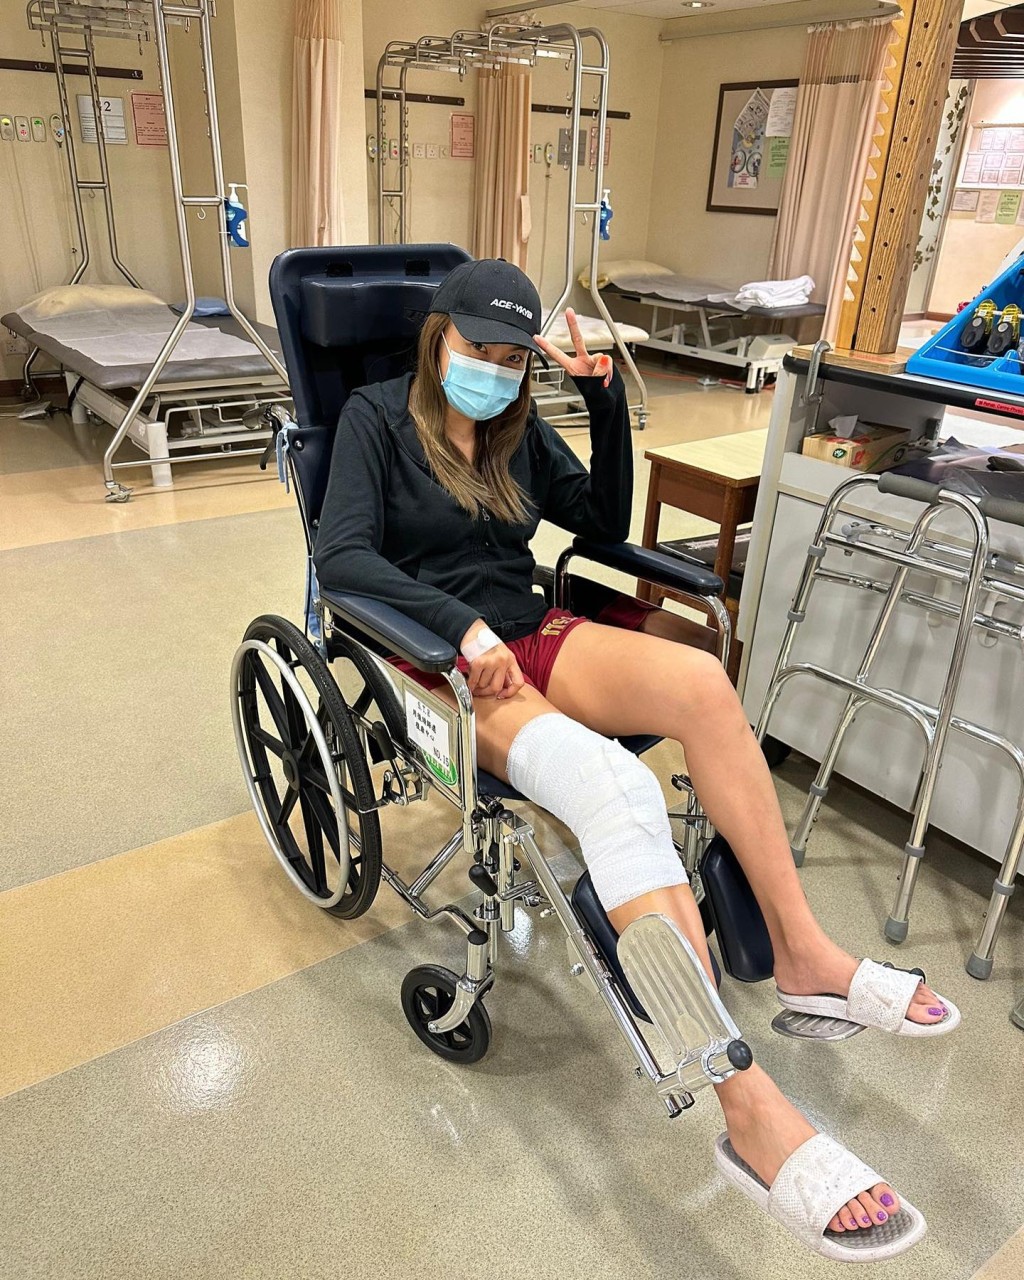 羅苡之今年8月初因膝蓋受傷入院。